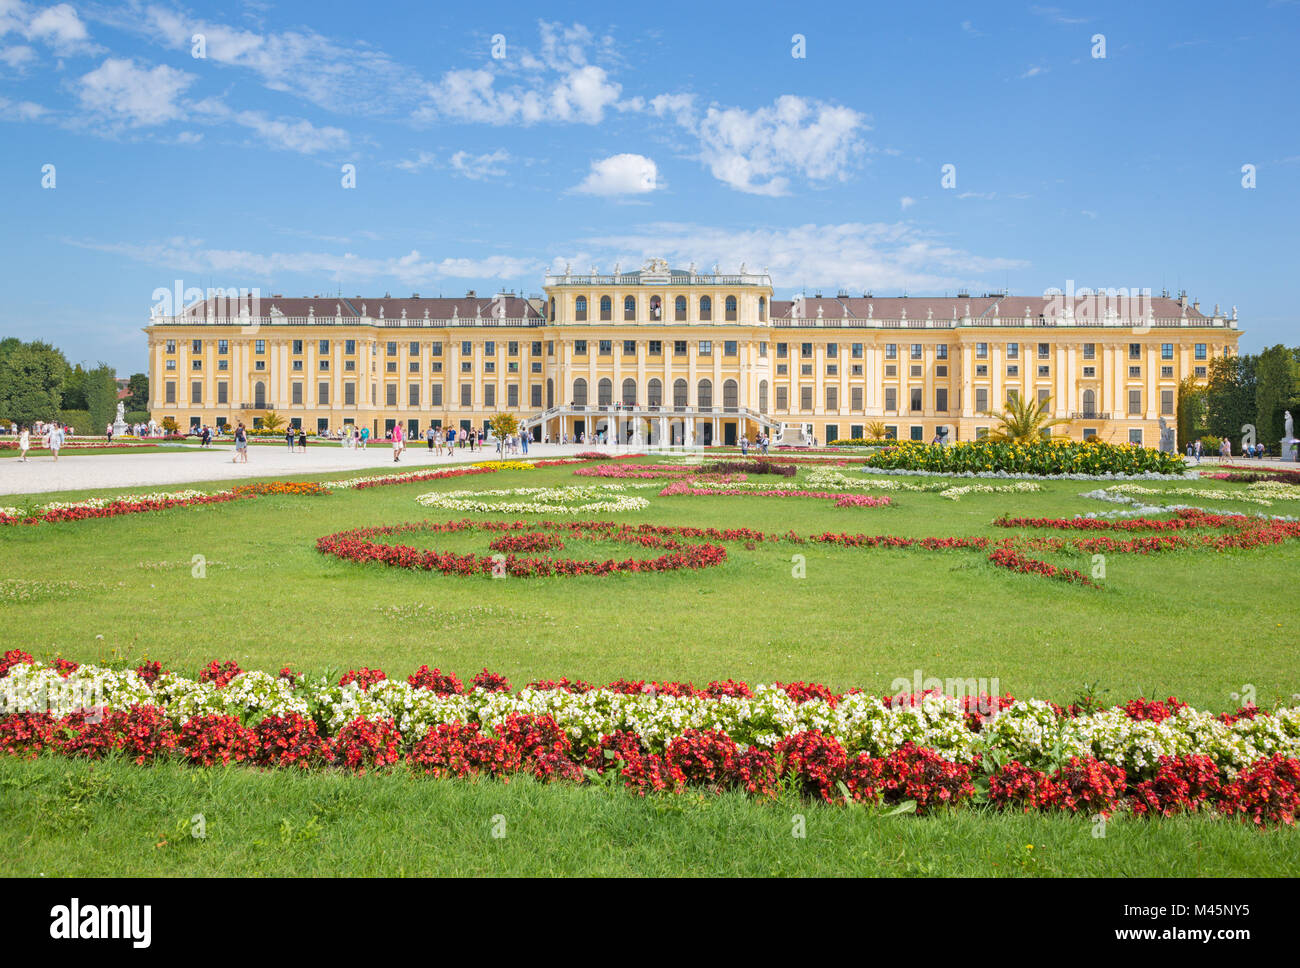 VIENNA, Austria - 30 luglio 2014: Il Palazzo di Schonbrunn e giardini. Foto Stock